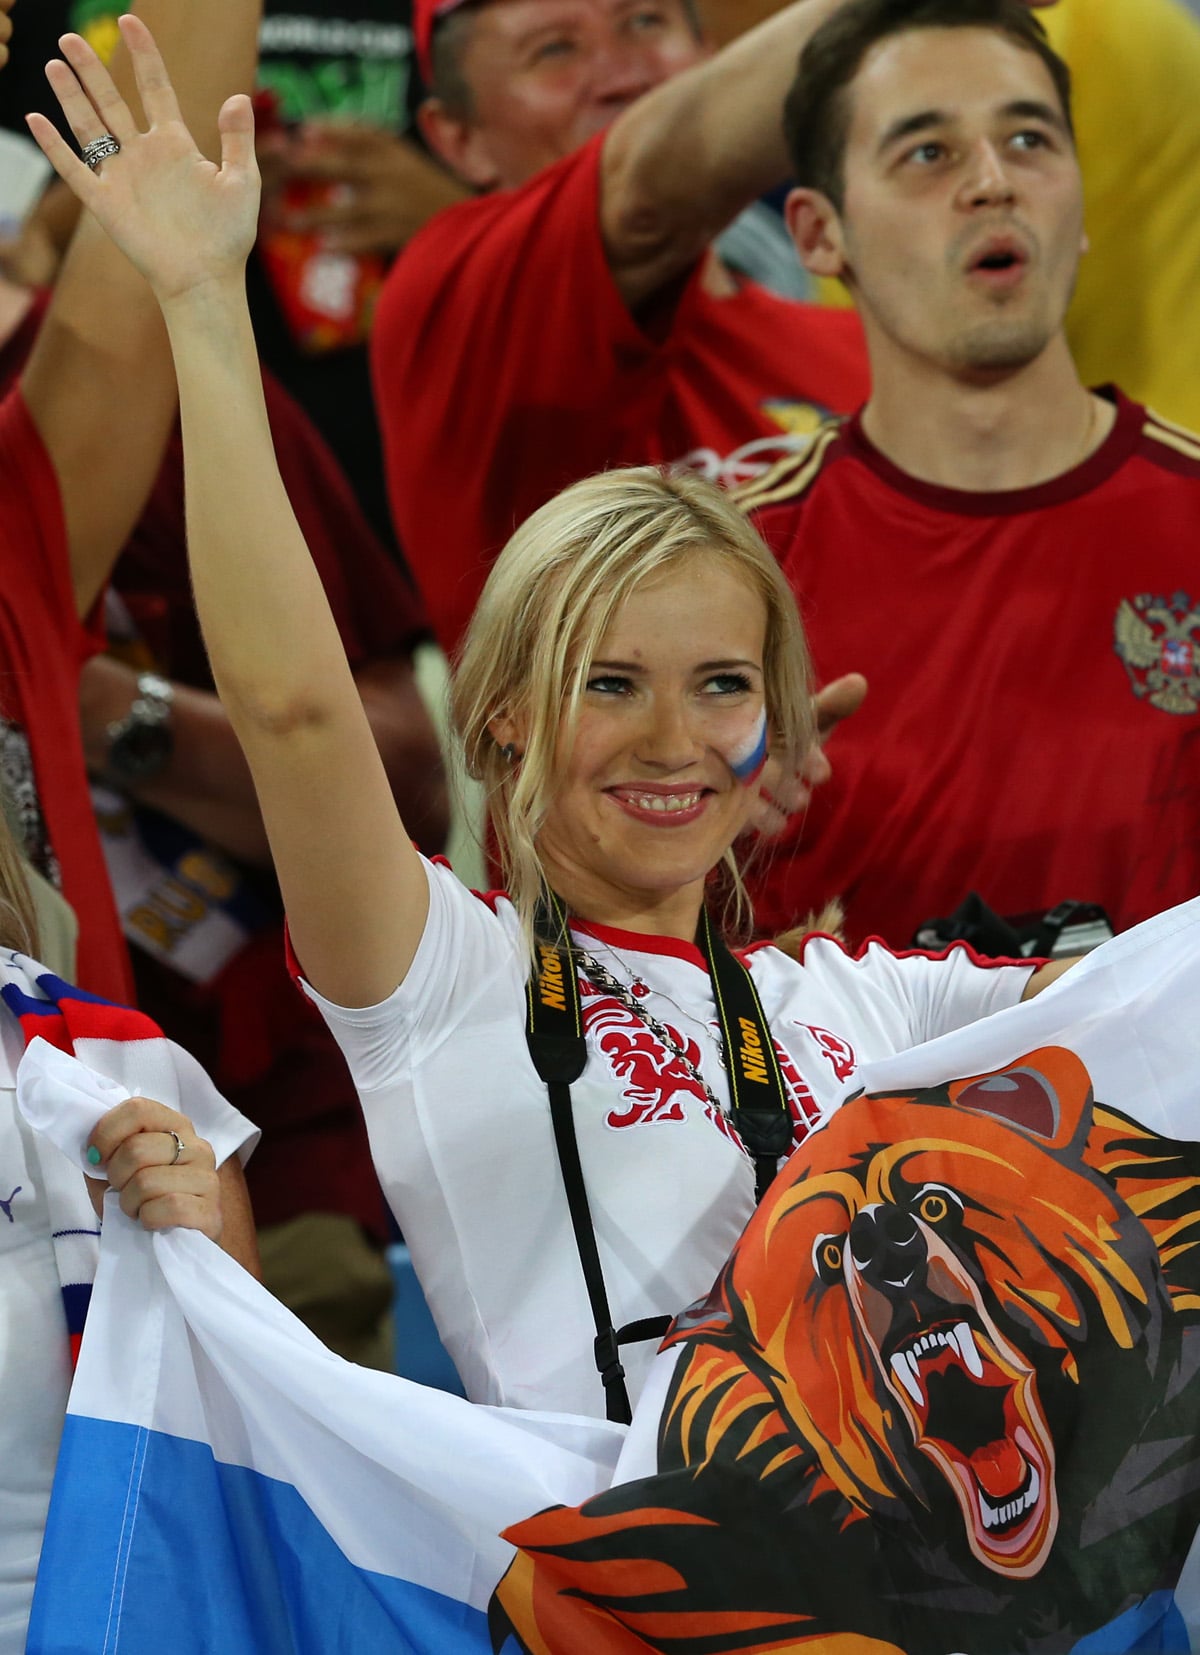 Cette jolie supportrice russe aura-t-elle le sourire ce soir ?